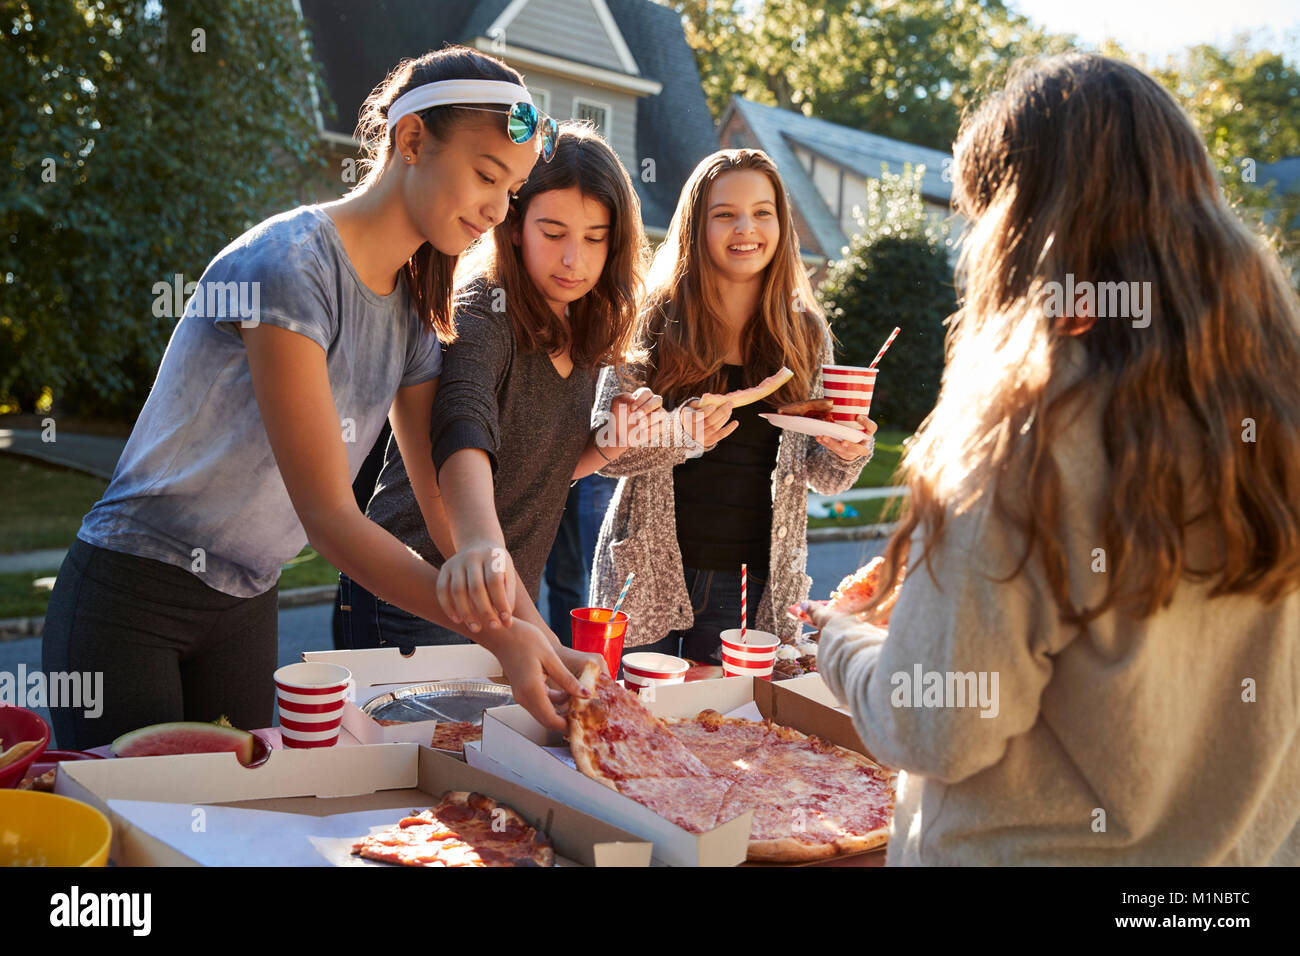 Teen girls sharing a pizza at a neighbourhood block party Stock Photo